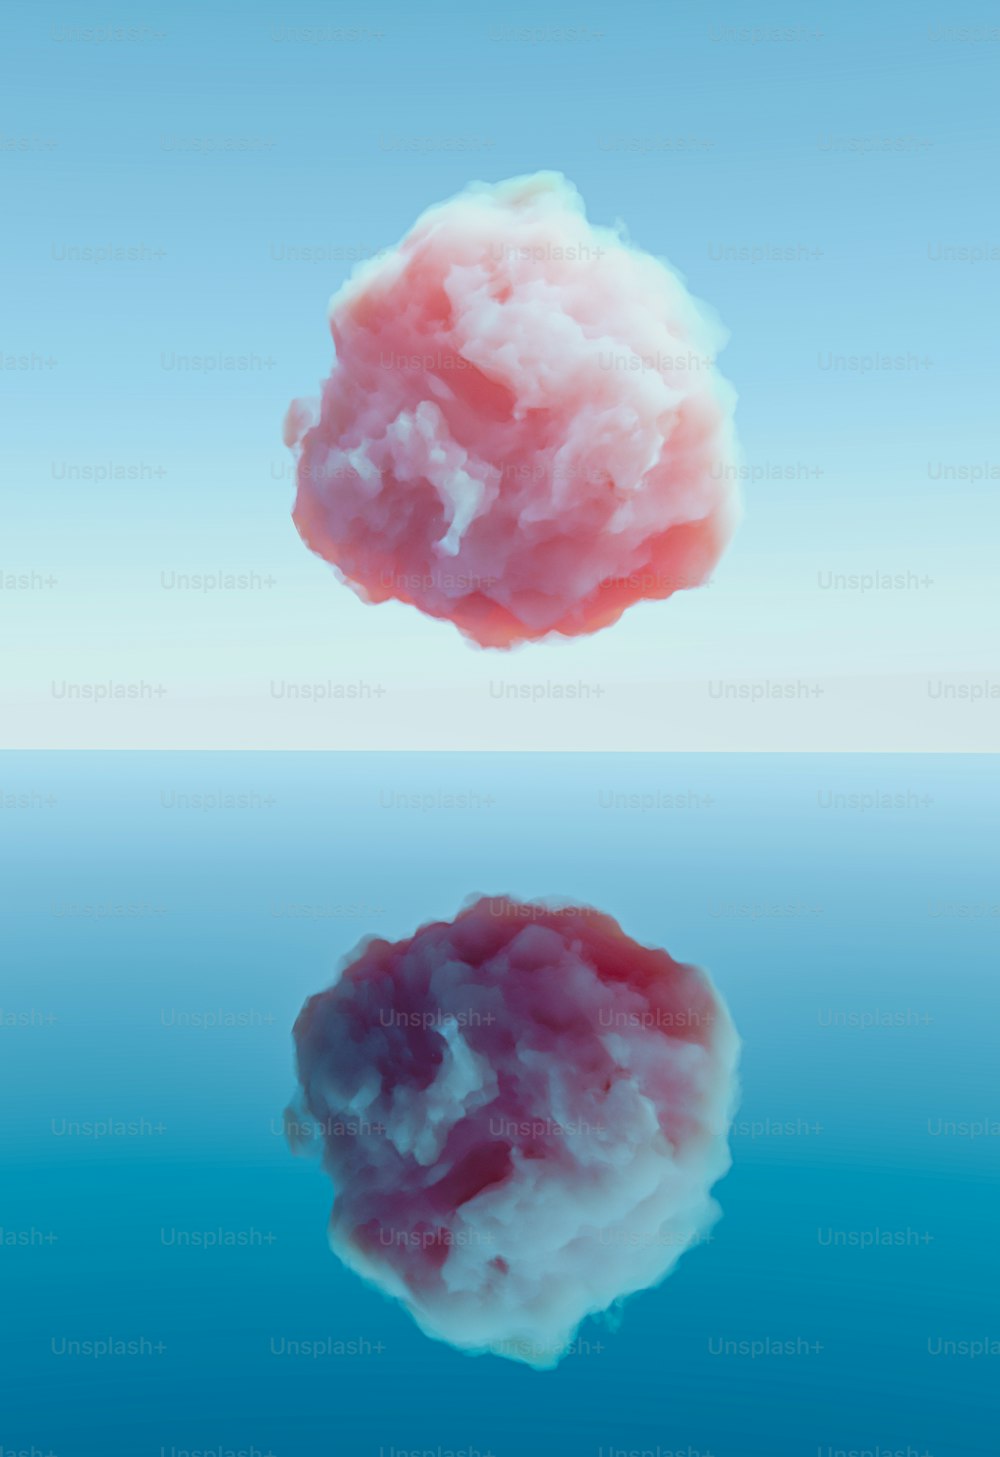 Una nube rosa flotando en el aire sobre un cuerpo de agua